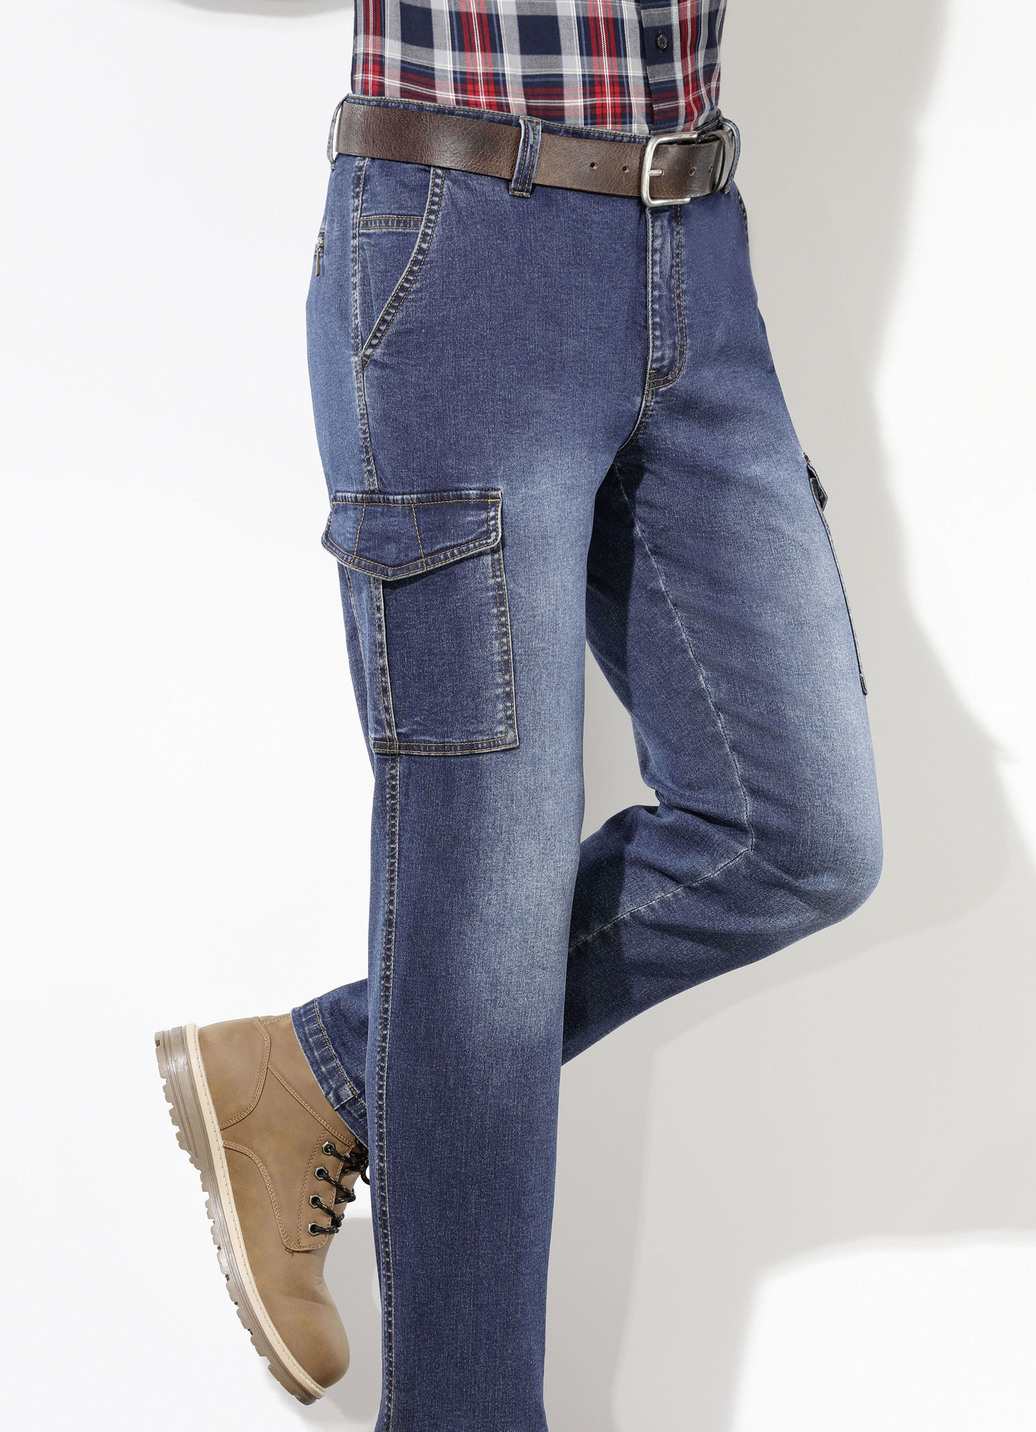 Jeans in 2 Farben, Jeansblau, Größe 54 von BADER